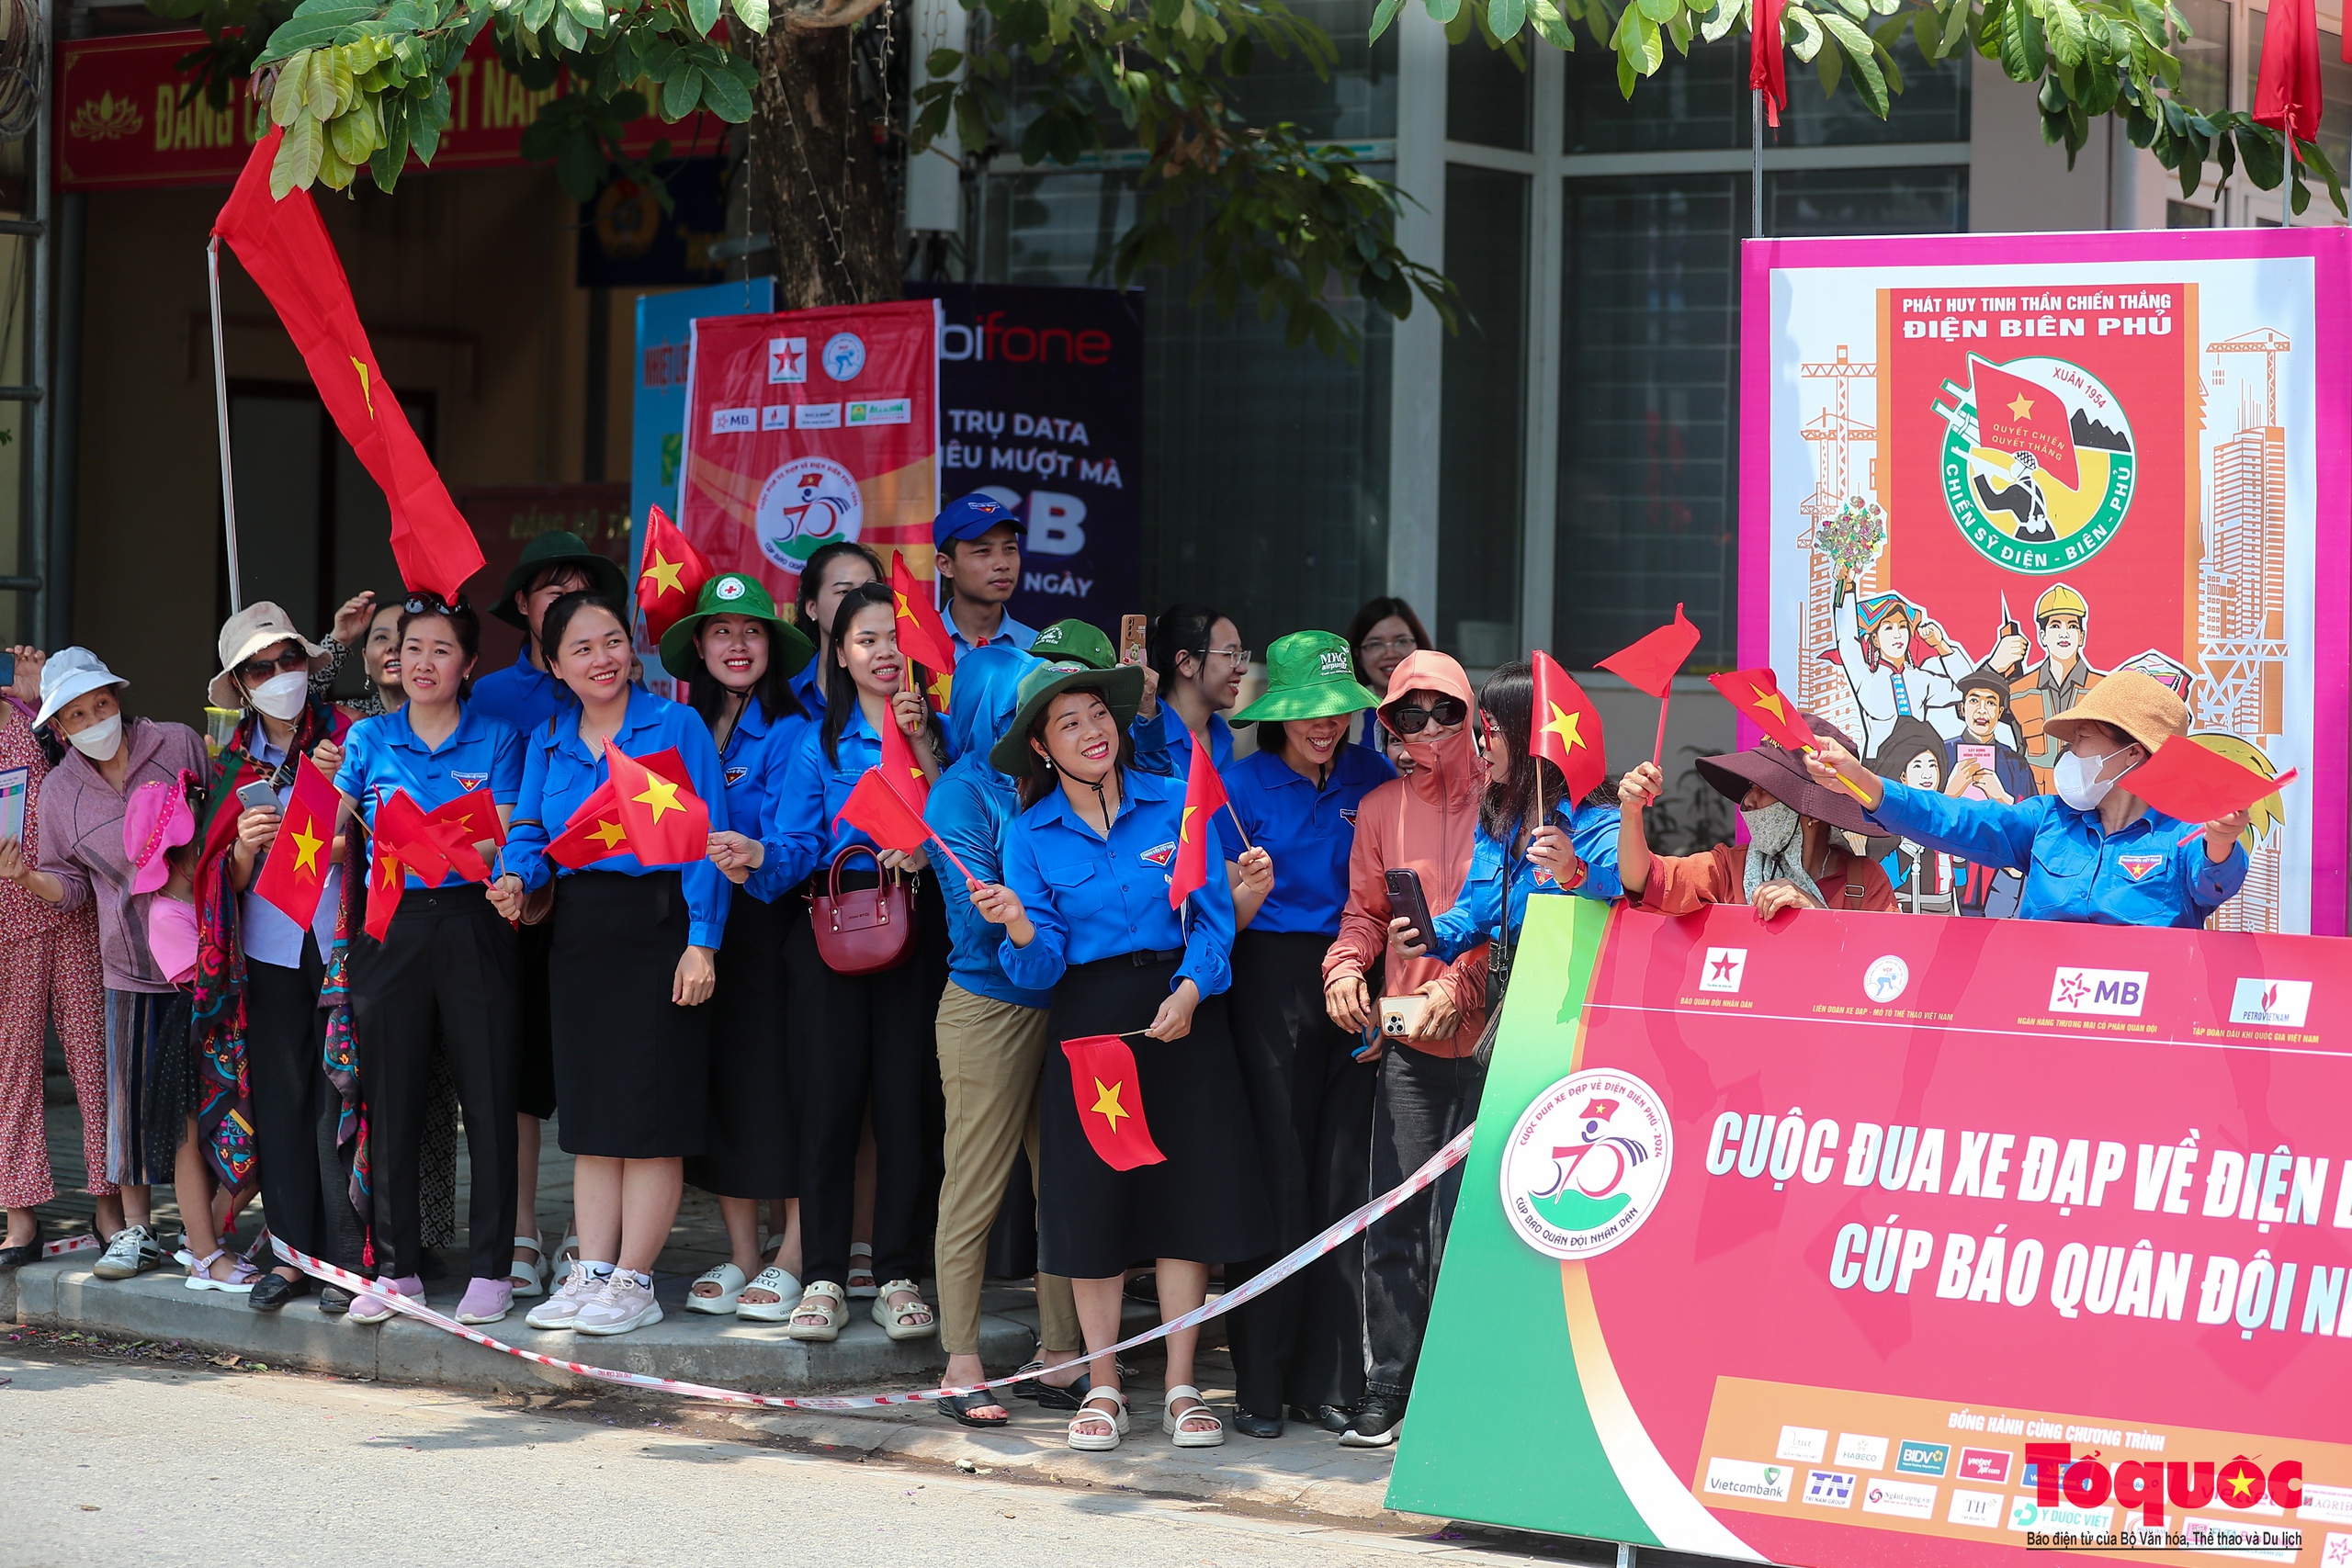 Người dân rực rỡ cờ hoa chào đón các tay đua xe đạp về Điện Biên Phủ 2024 Cúp Báo QĐND - Ảnh 9.